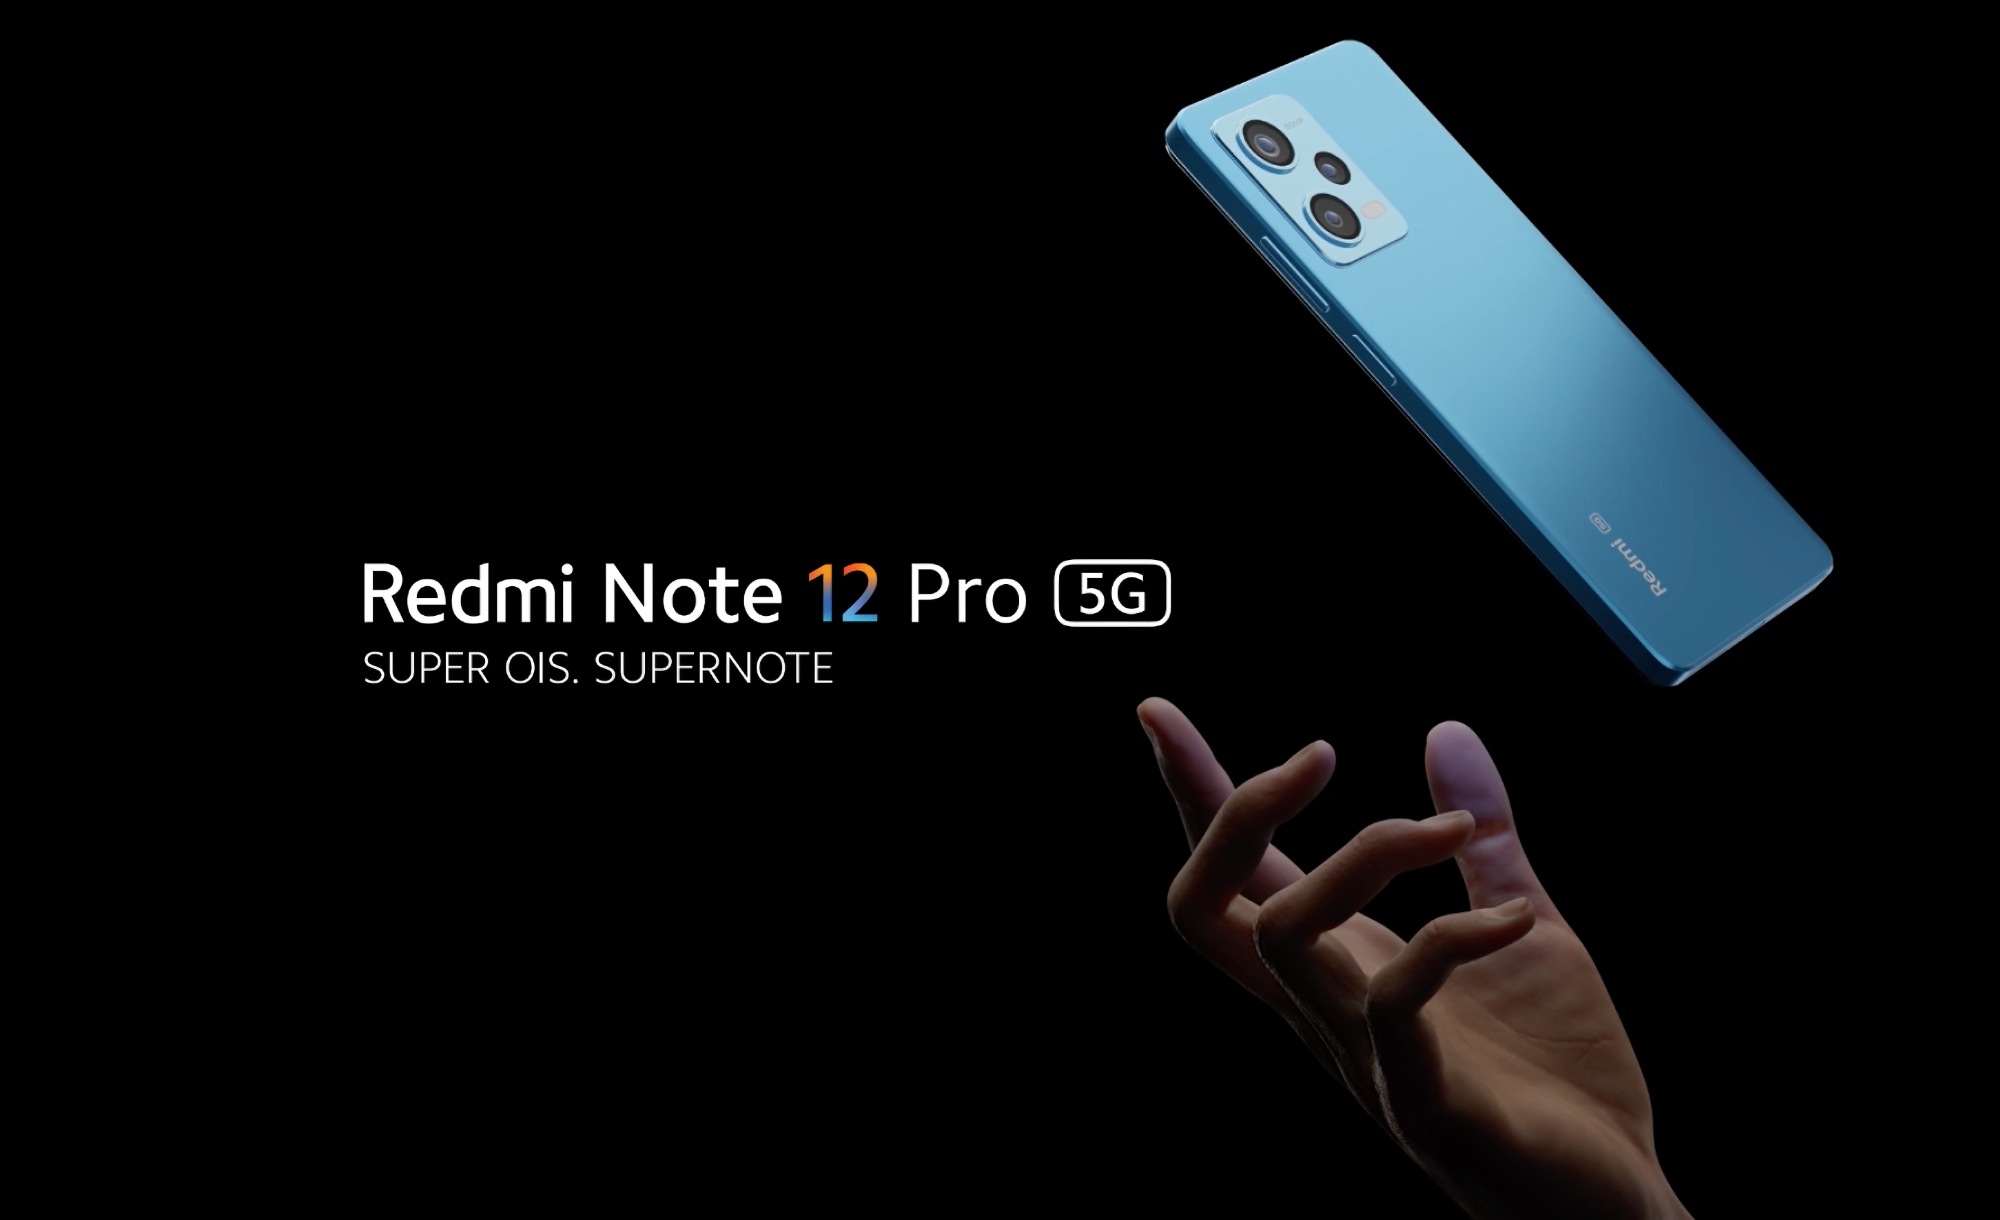 Le Redmi Note 12 Pro, doté de la puce MediaTek Dimensity 1080, d'un appareil photo Sony IMX766 de 50 mégapixels et d'un système de charge rapide de 67 W, est dévoilé hors de Chine.